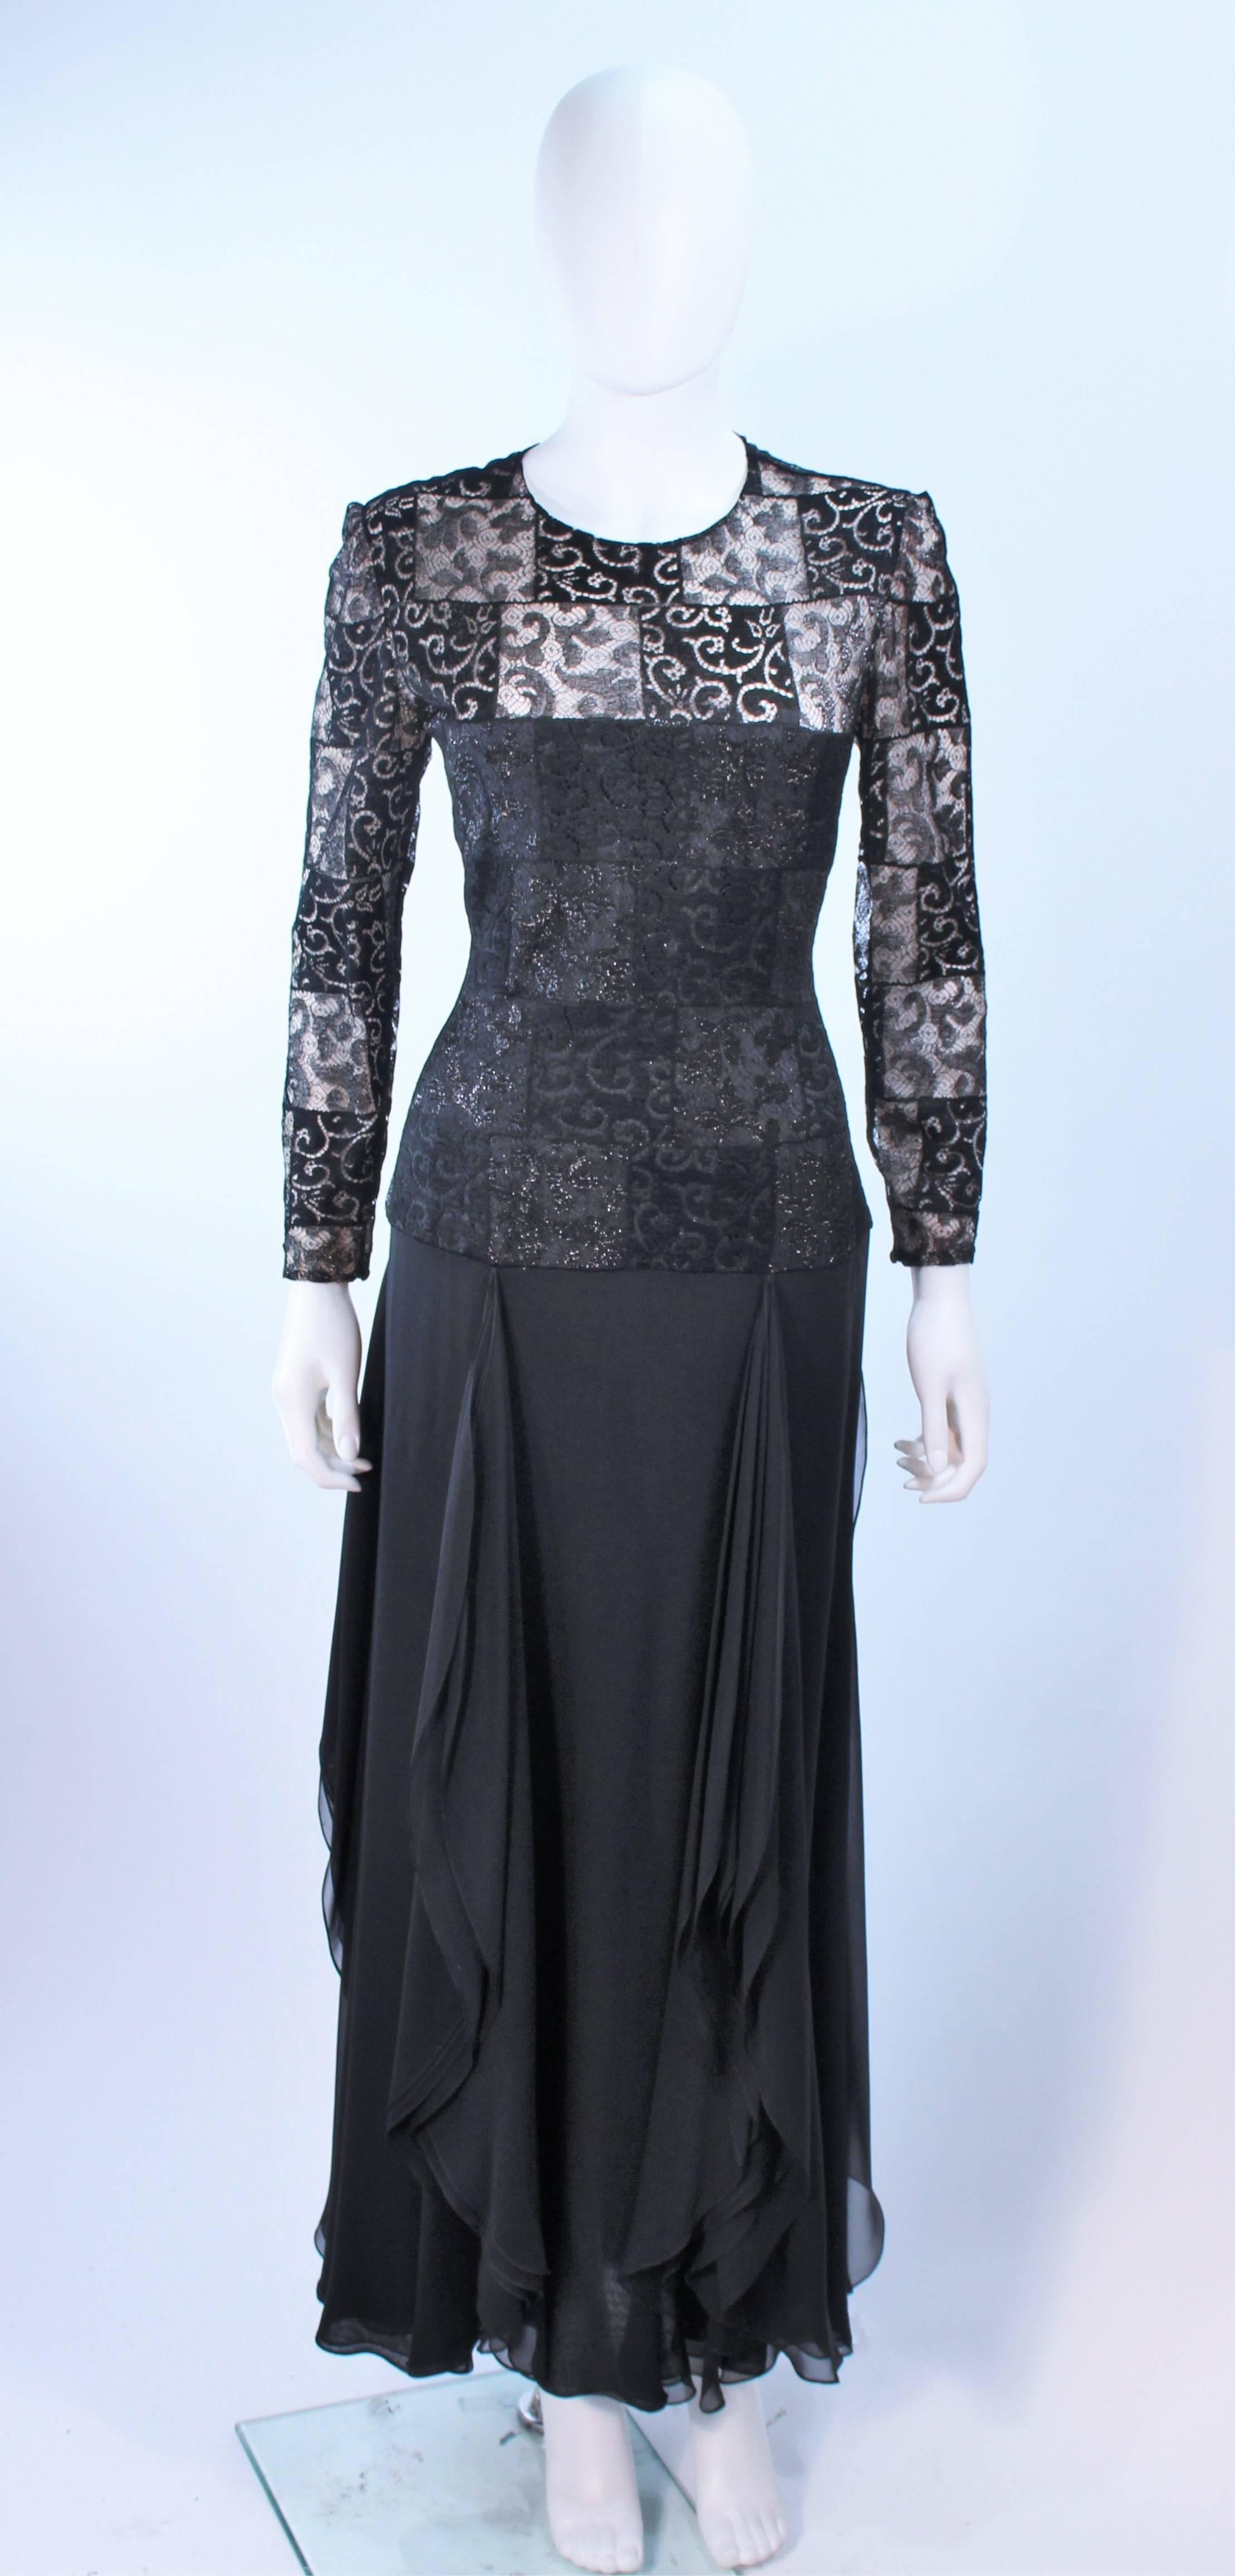 Cette robe est composée de dentelle métallique noire avec une jupe drapée en mousseline. Il est doté d'une doublure intérieure nude et d'une fermeture éclair au centre du dos. Vintage, en excellent état.

**Veuillez croiser les mesures pour une